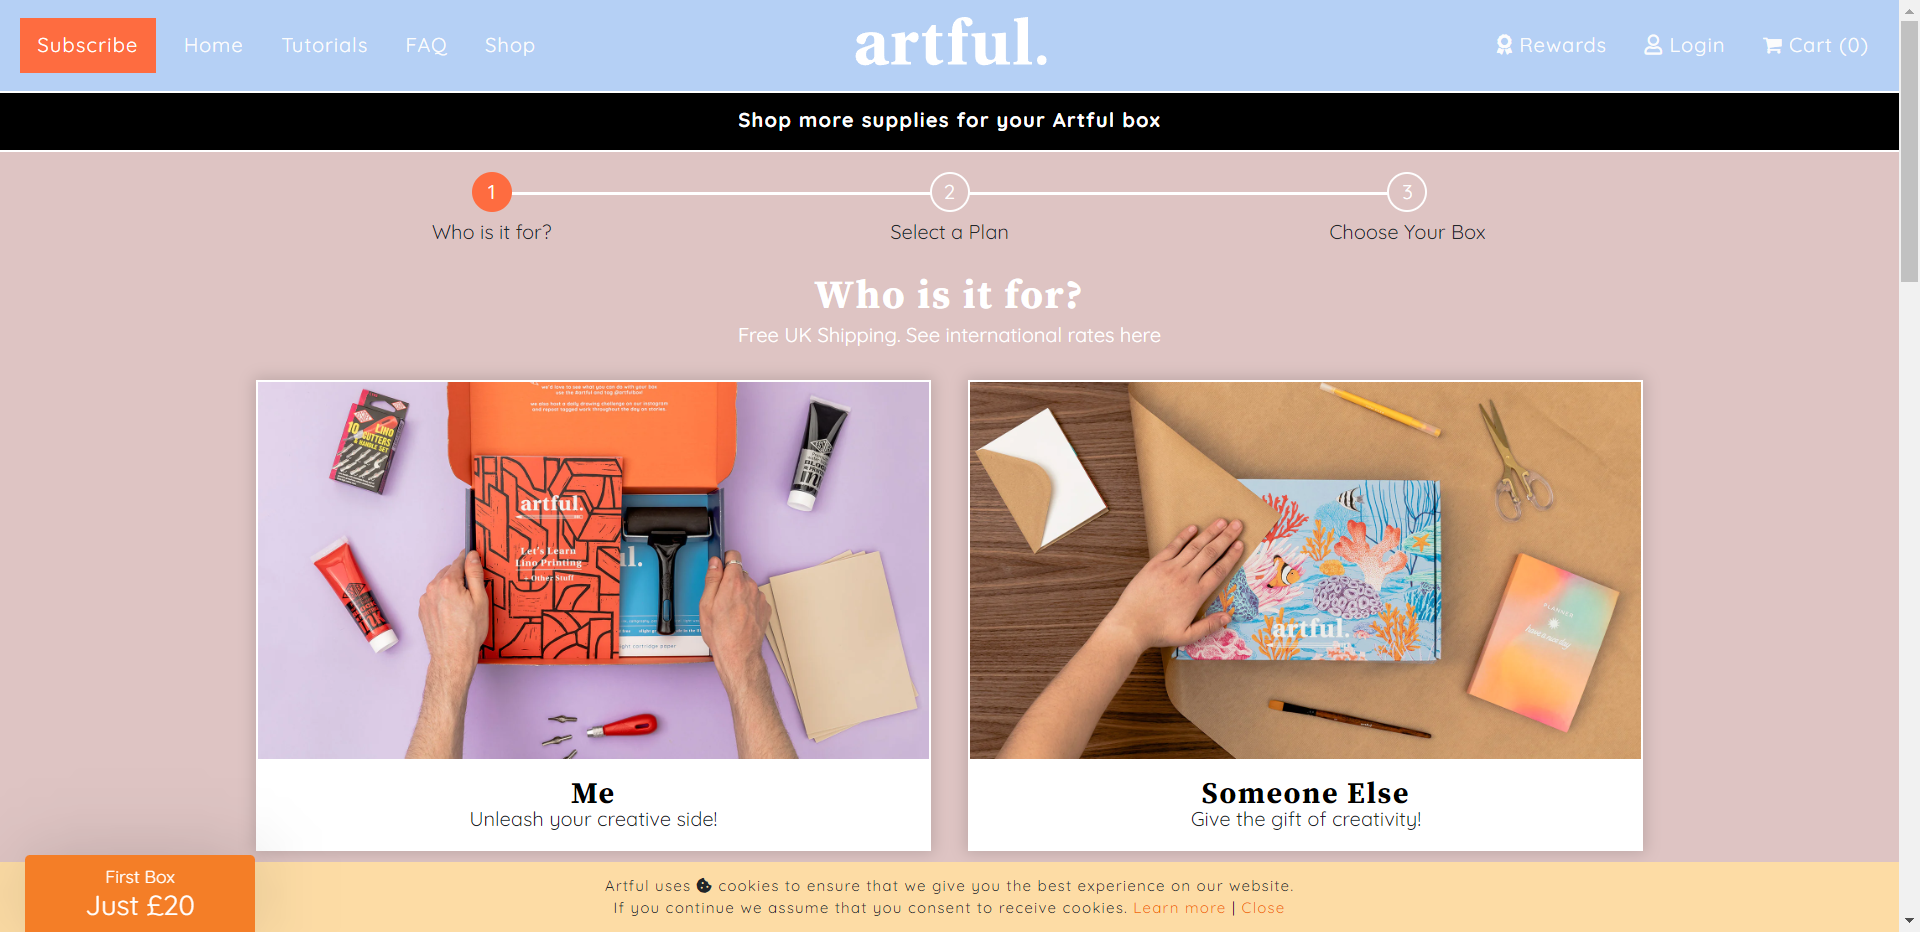 Artful.co.uk nettbutikk - Les omtalen av nettbutikken